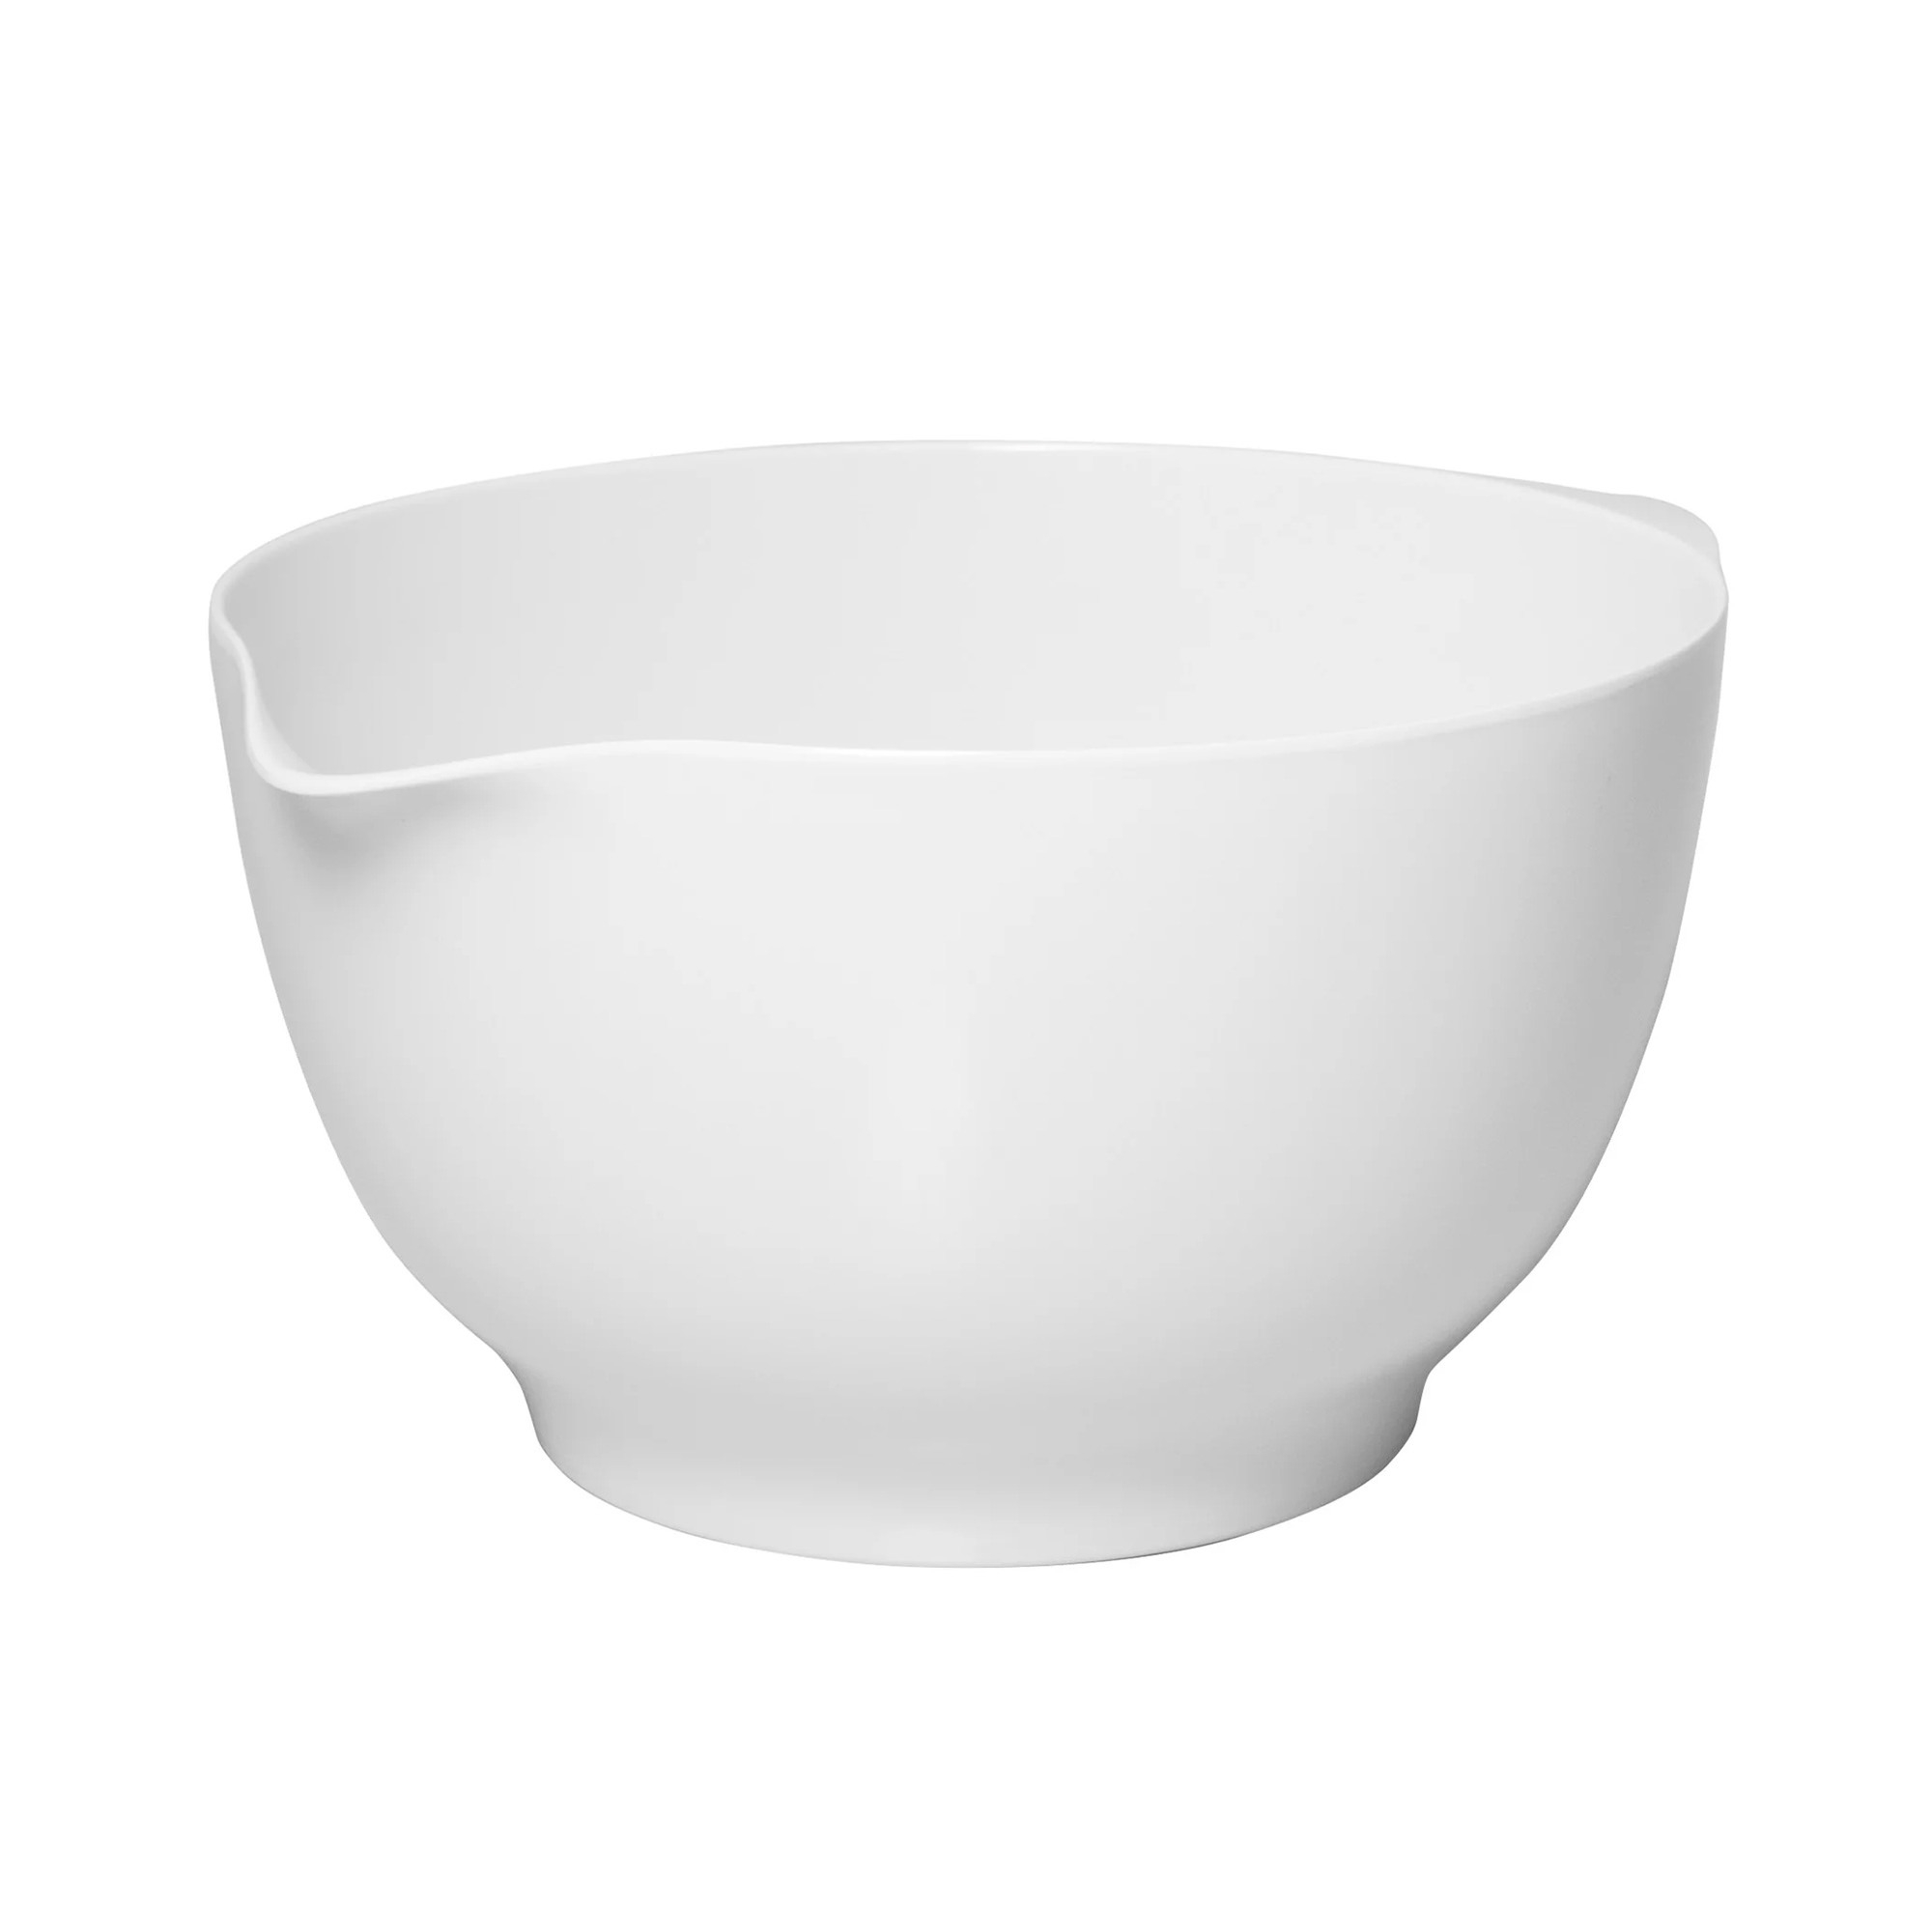 Avanti Melamine Mixing Bowl 21cm - 2.5L White Image 1